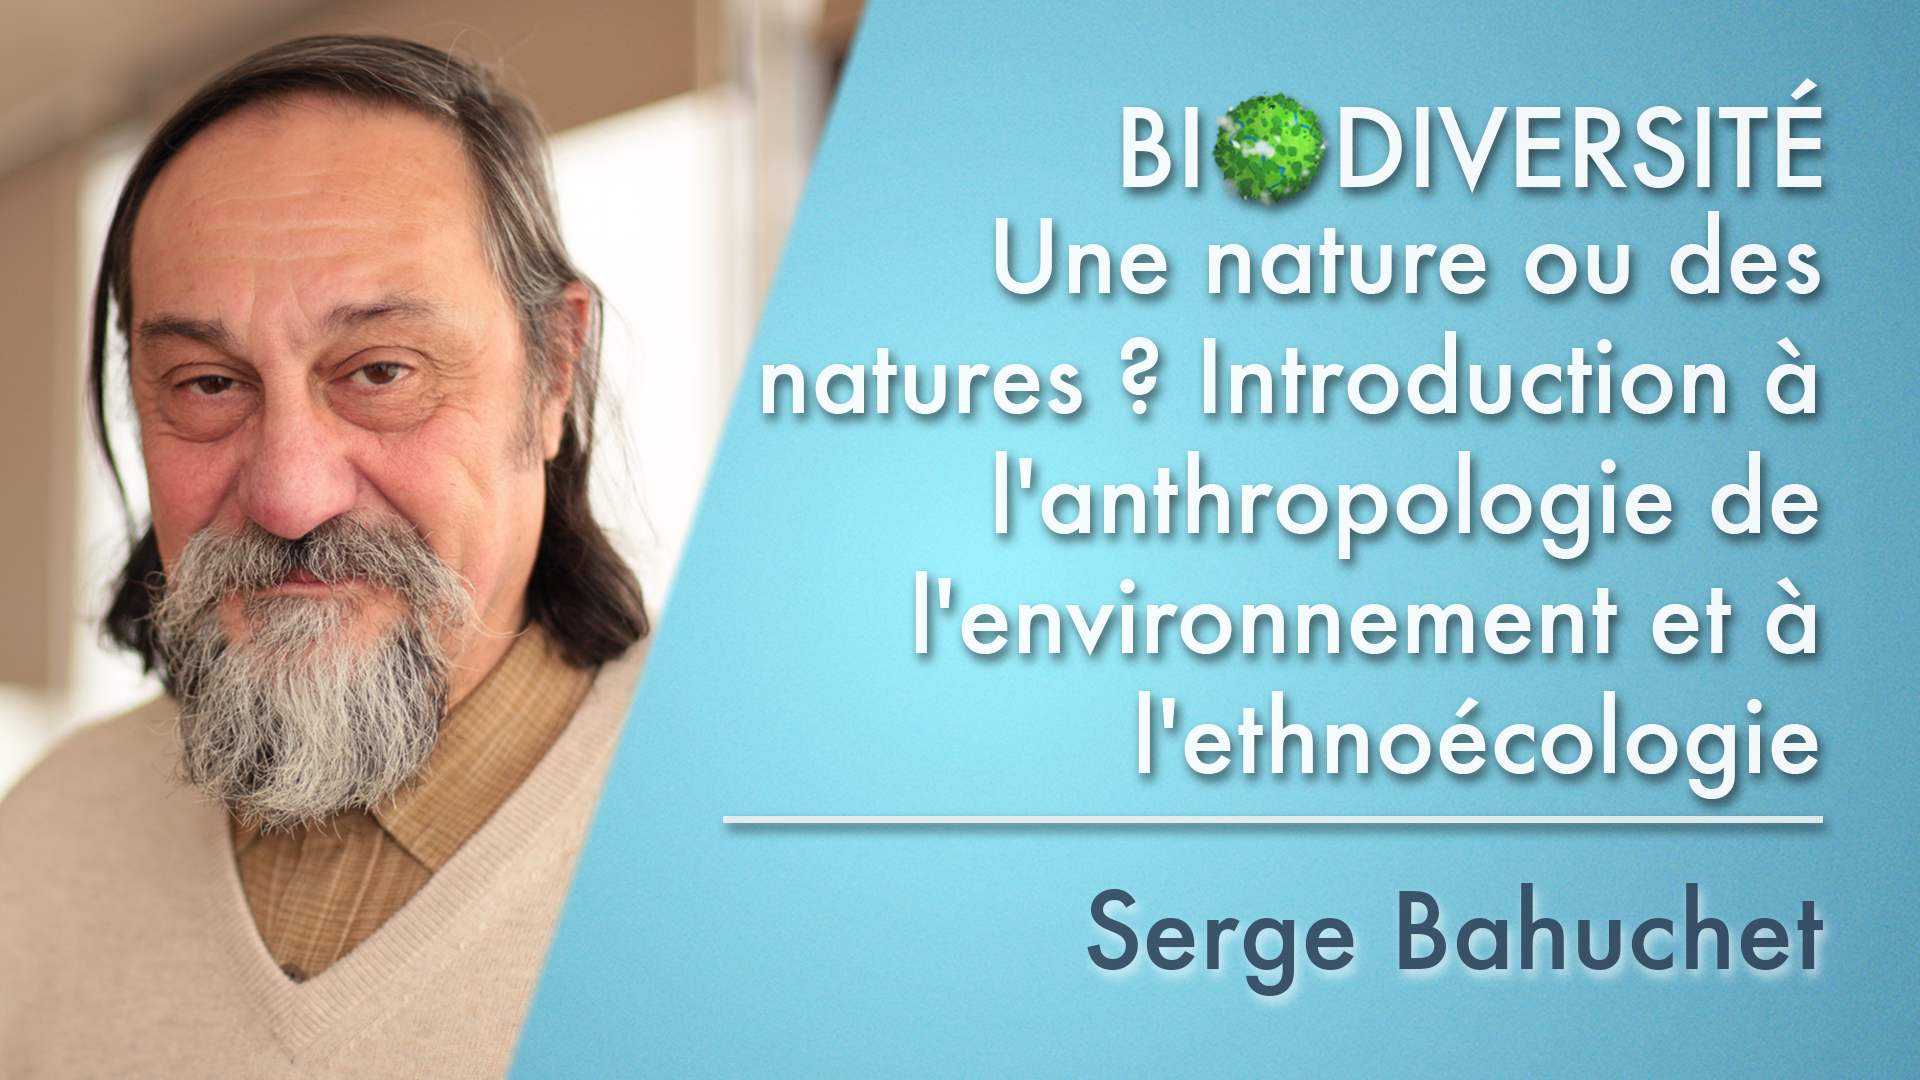 2. Une nature ou des natures ? Introduction à l'anthropologie de l'environnement et à l'ethnoécologie